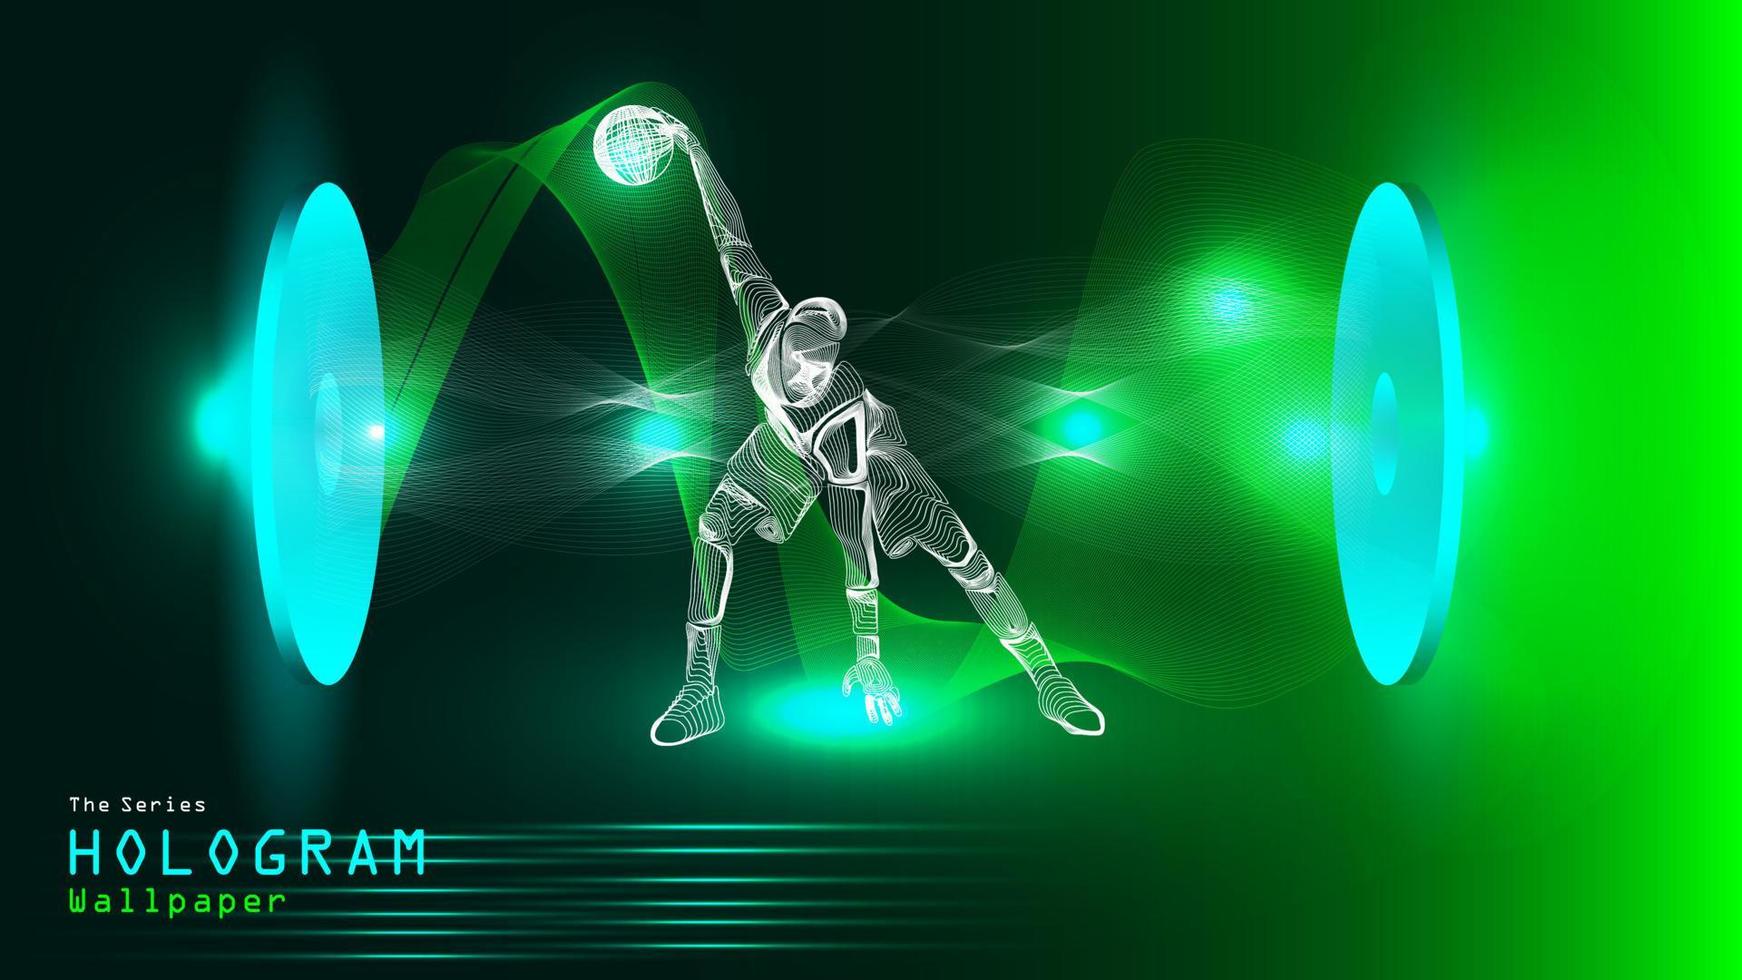 a série de papel de parede de pôster de holograma. figura de ação de um jogador de basquete na projeção de luz. vetor